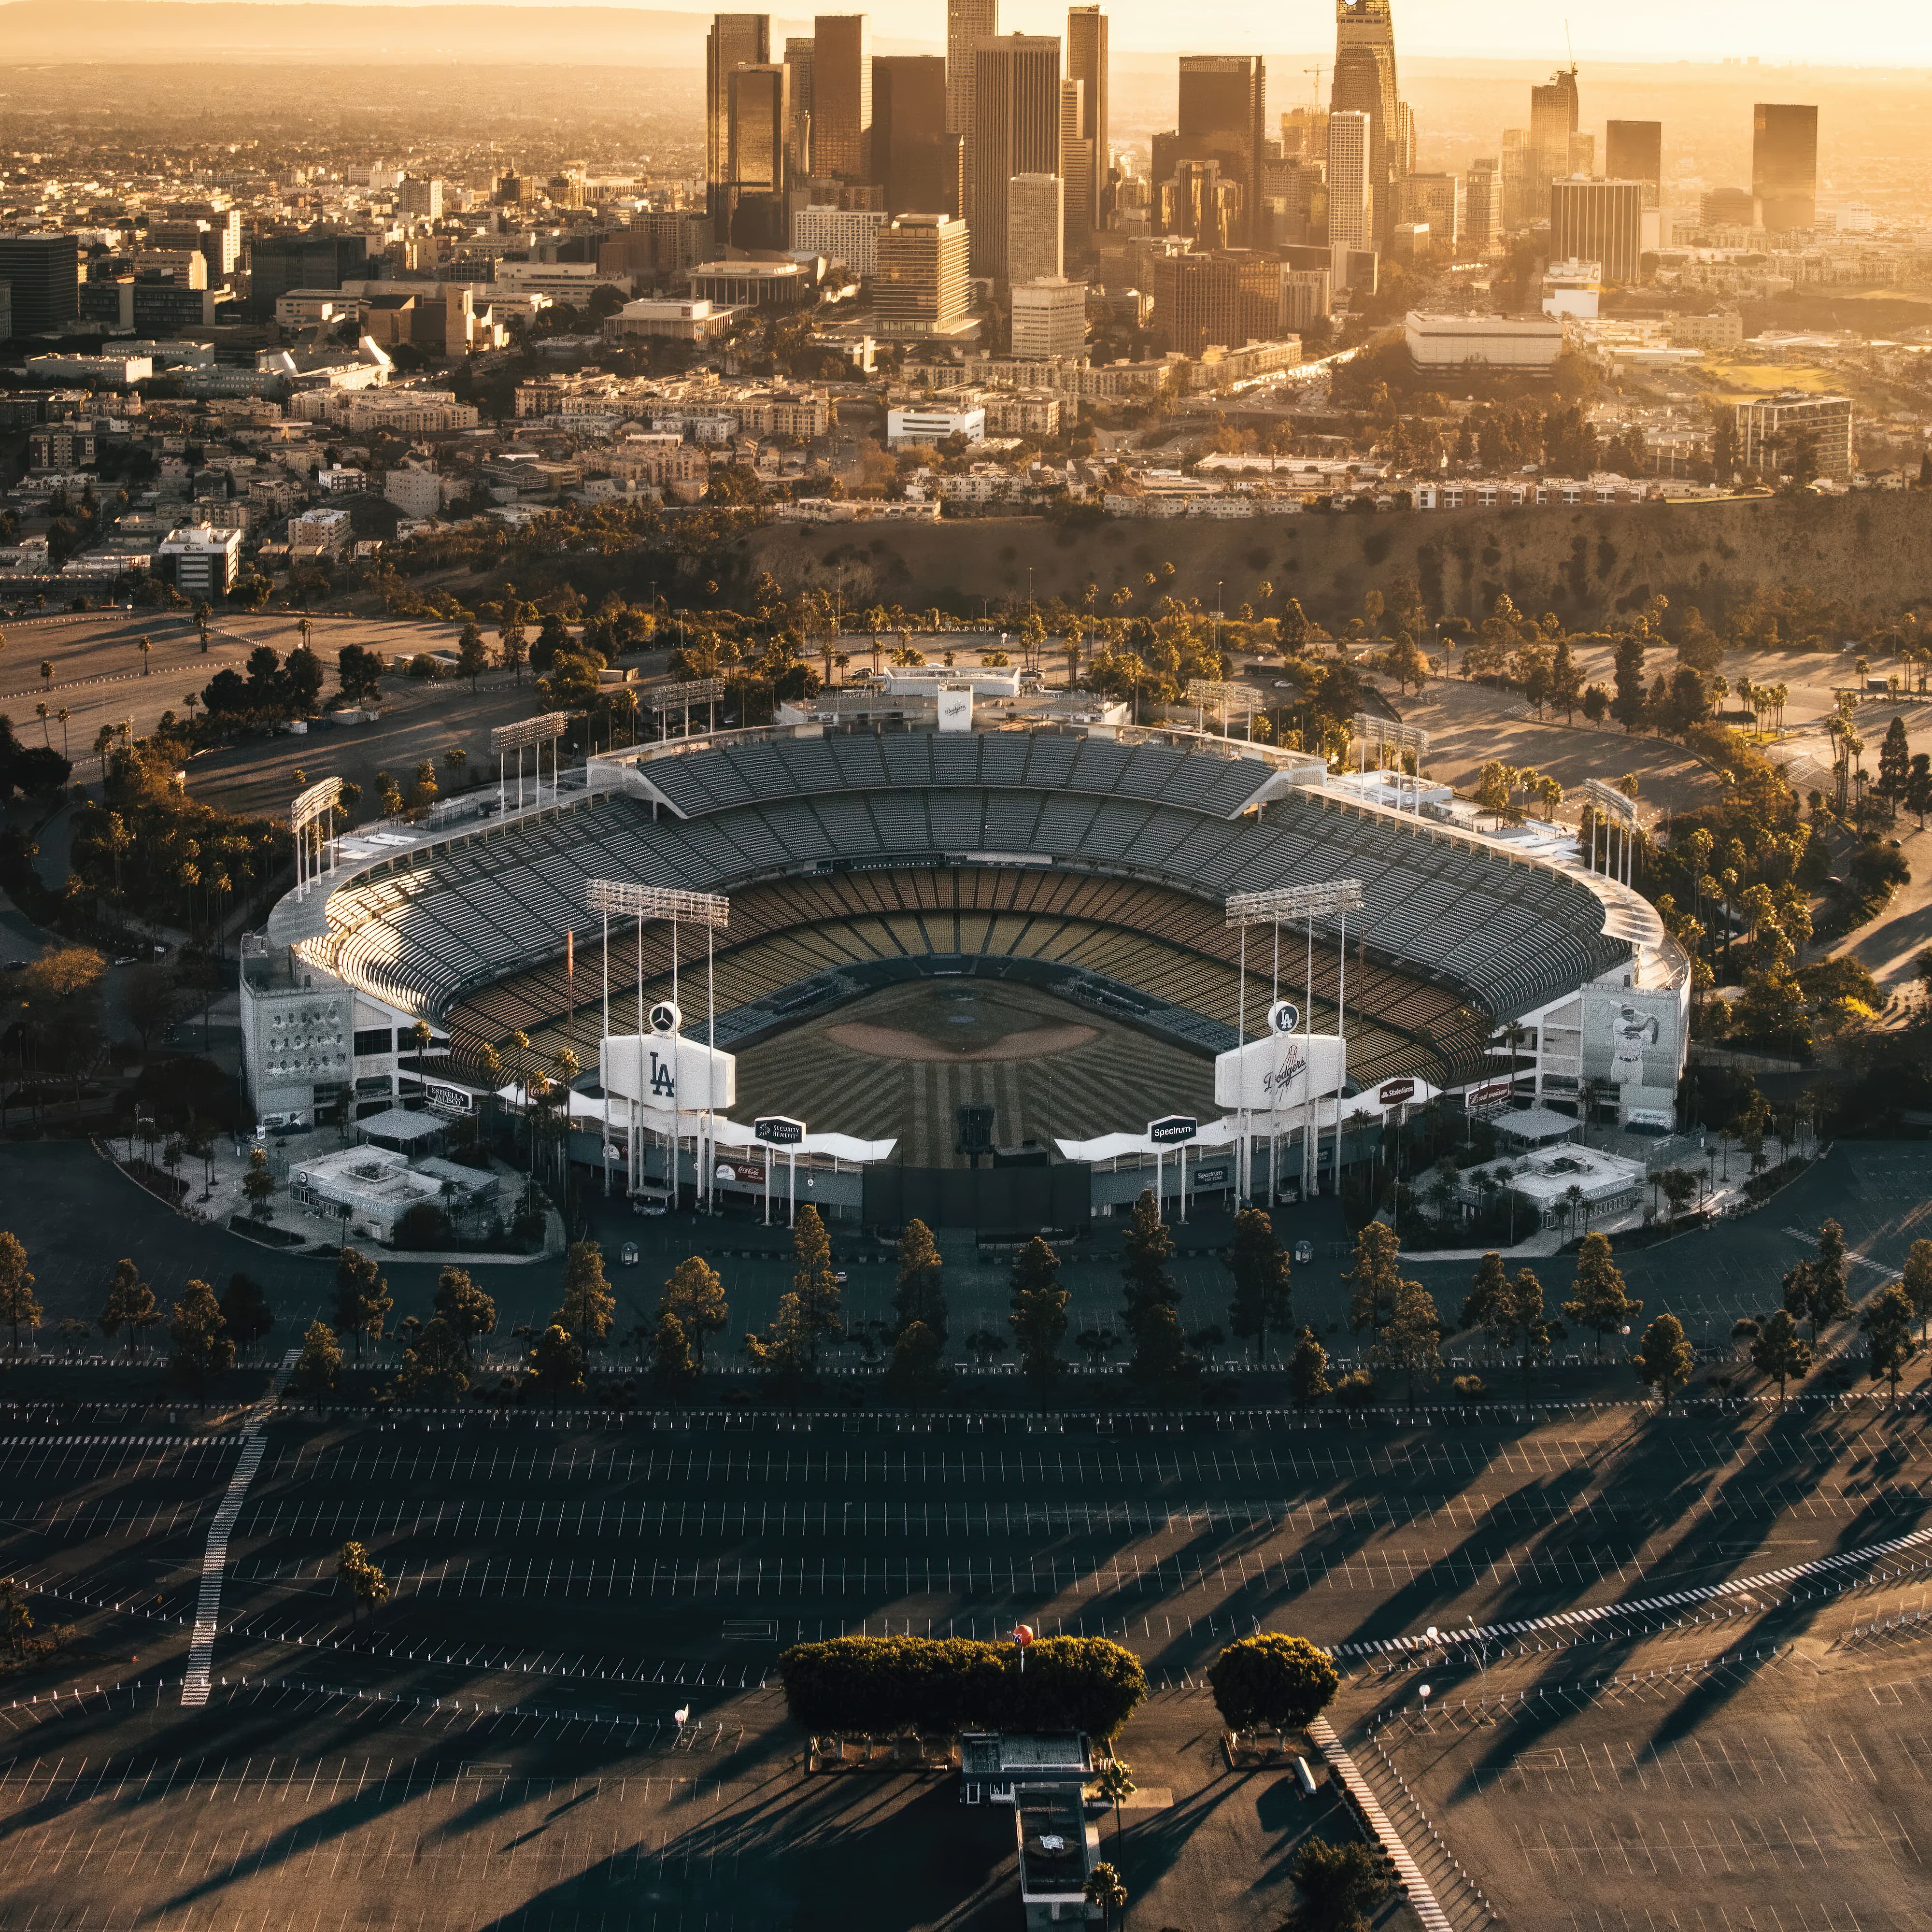 Aerial view of Dodgers Stadium during sunrise